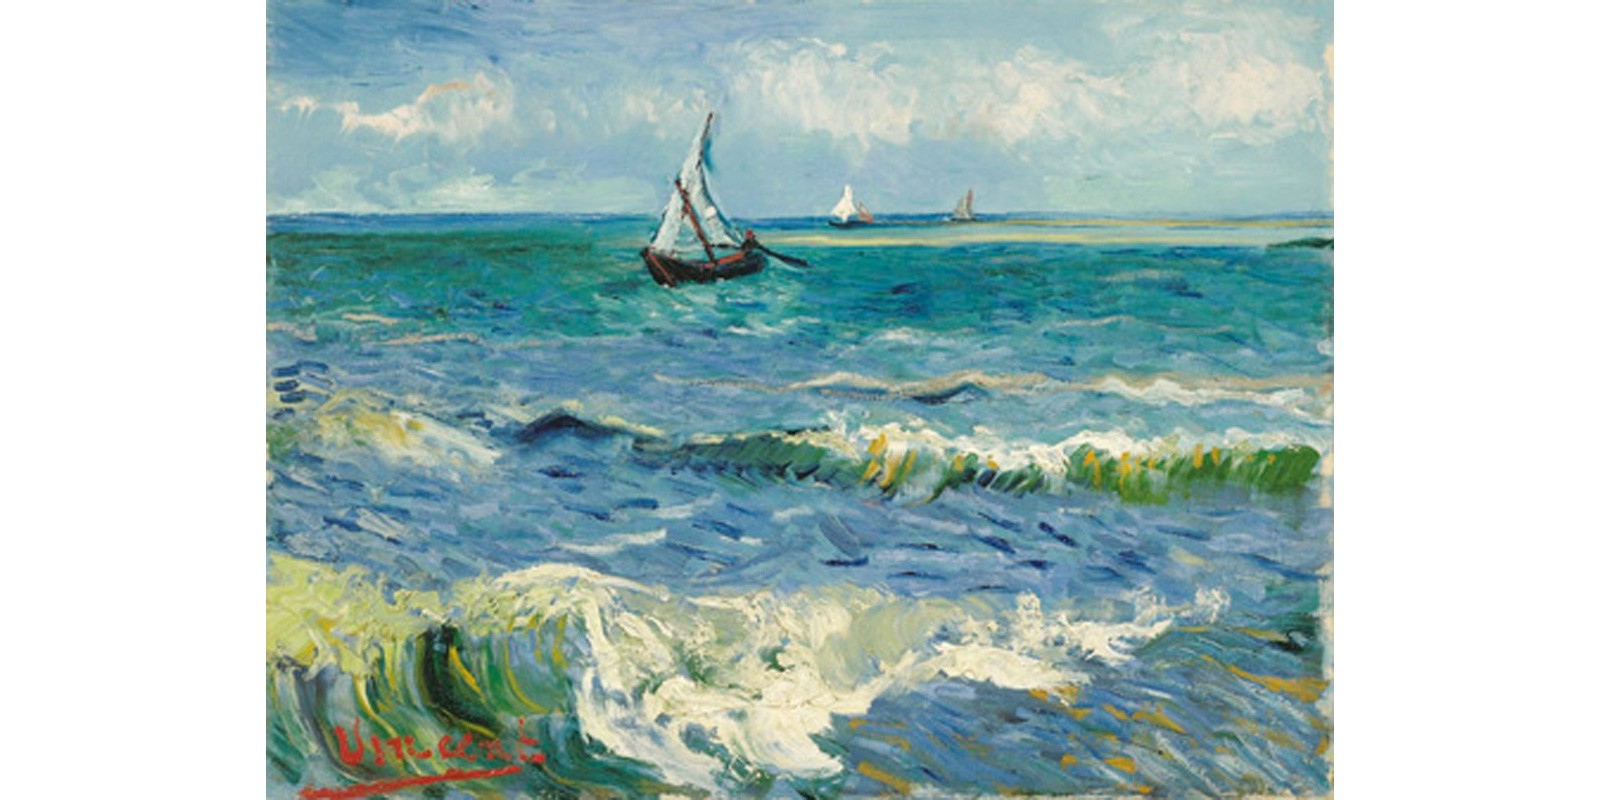 Vincent Van Gogh - Les Saintes-Maries-de-la-Mer